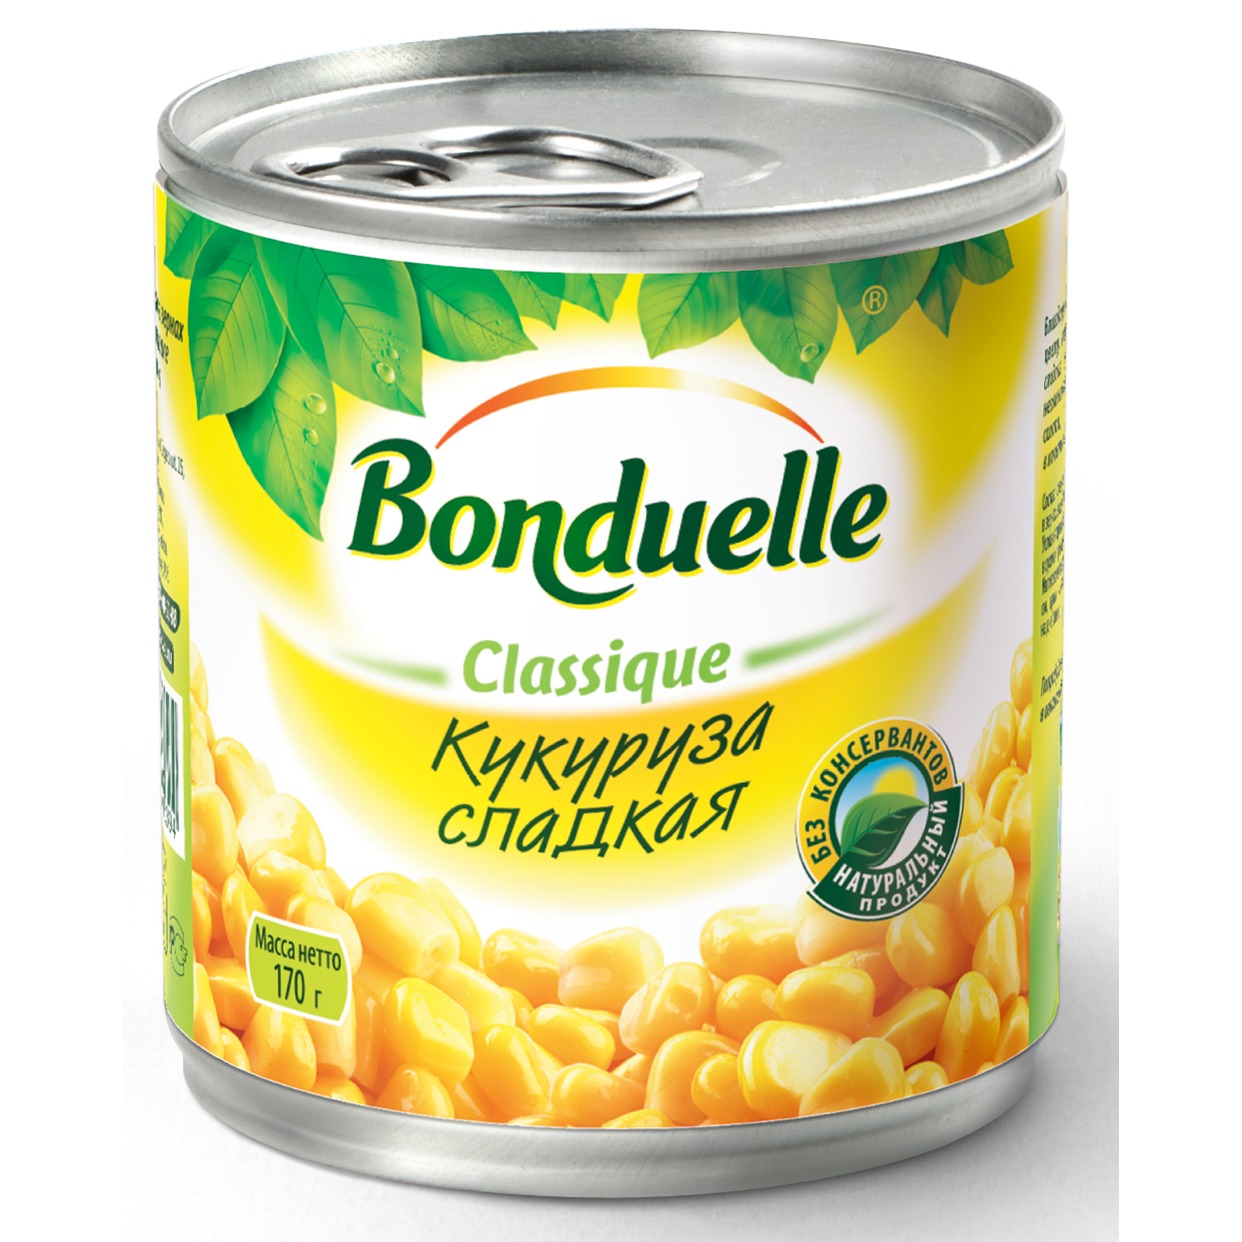 Кукуруза сладкая, Bonduelle, 200 г по акции в Пятерочке